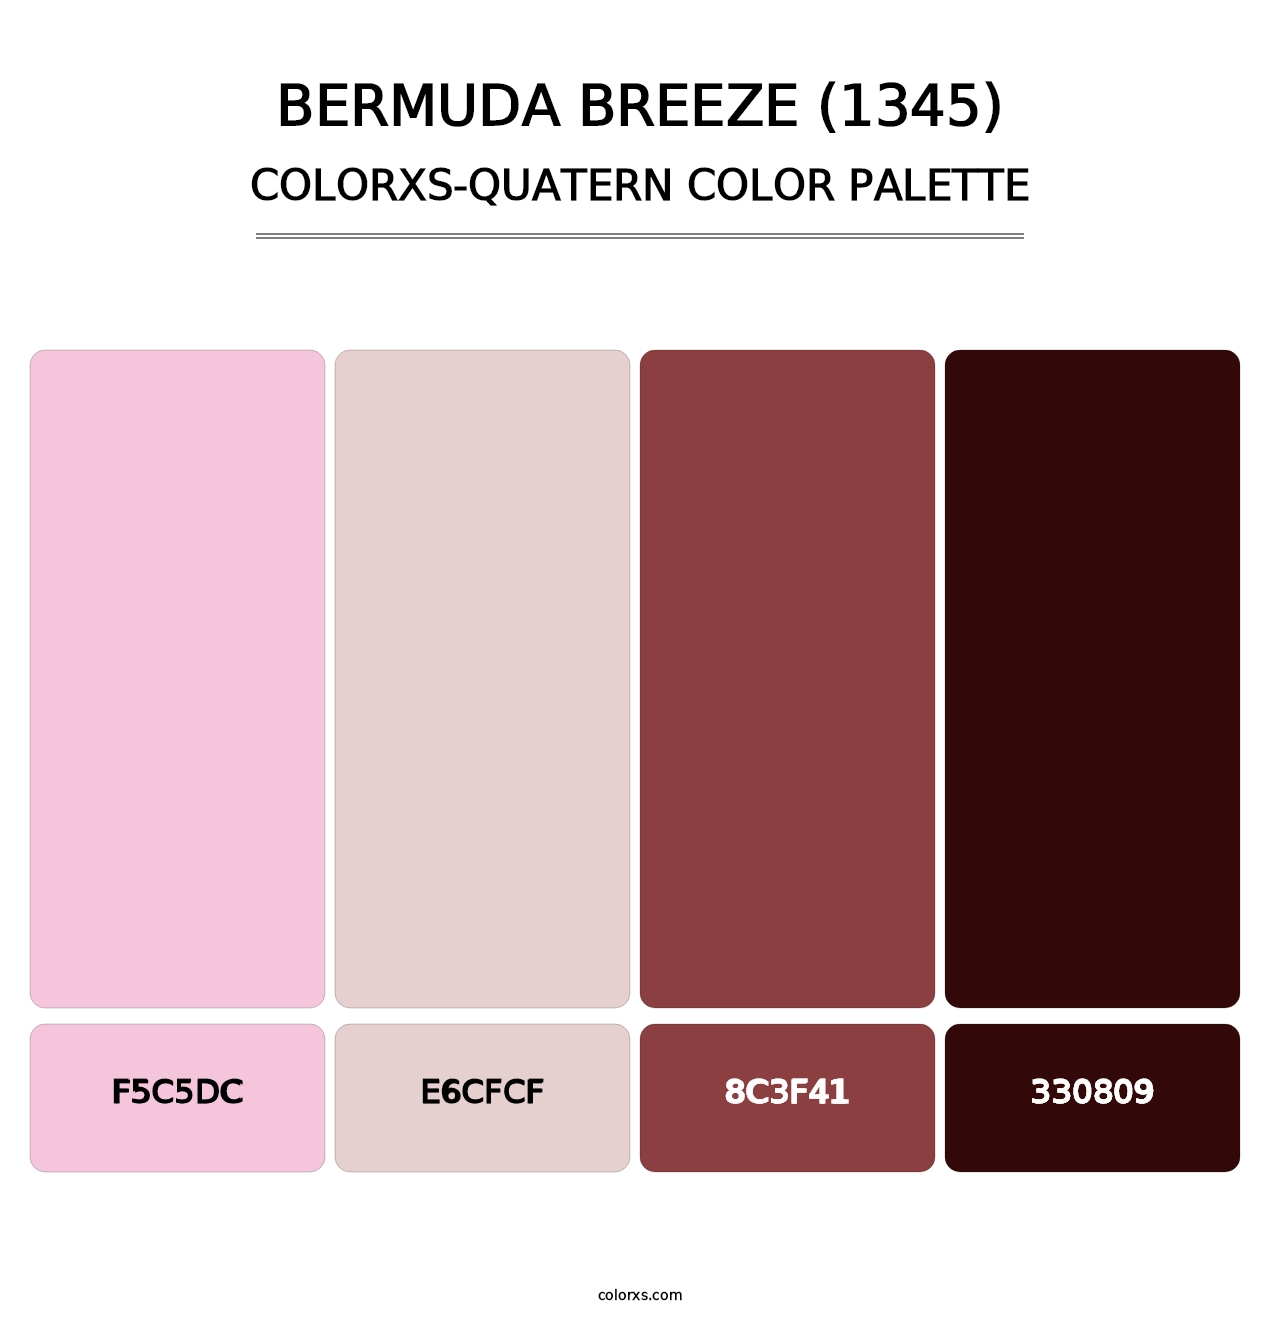 Bermuda Breeze (1345) - Colorxs Quatern Palette